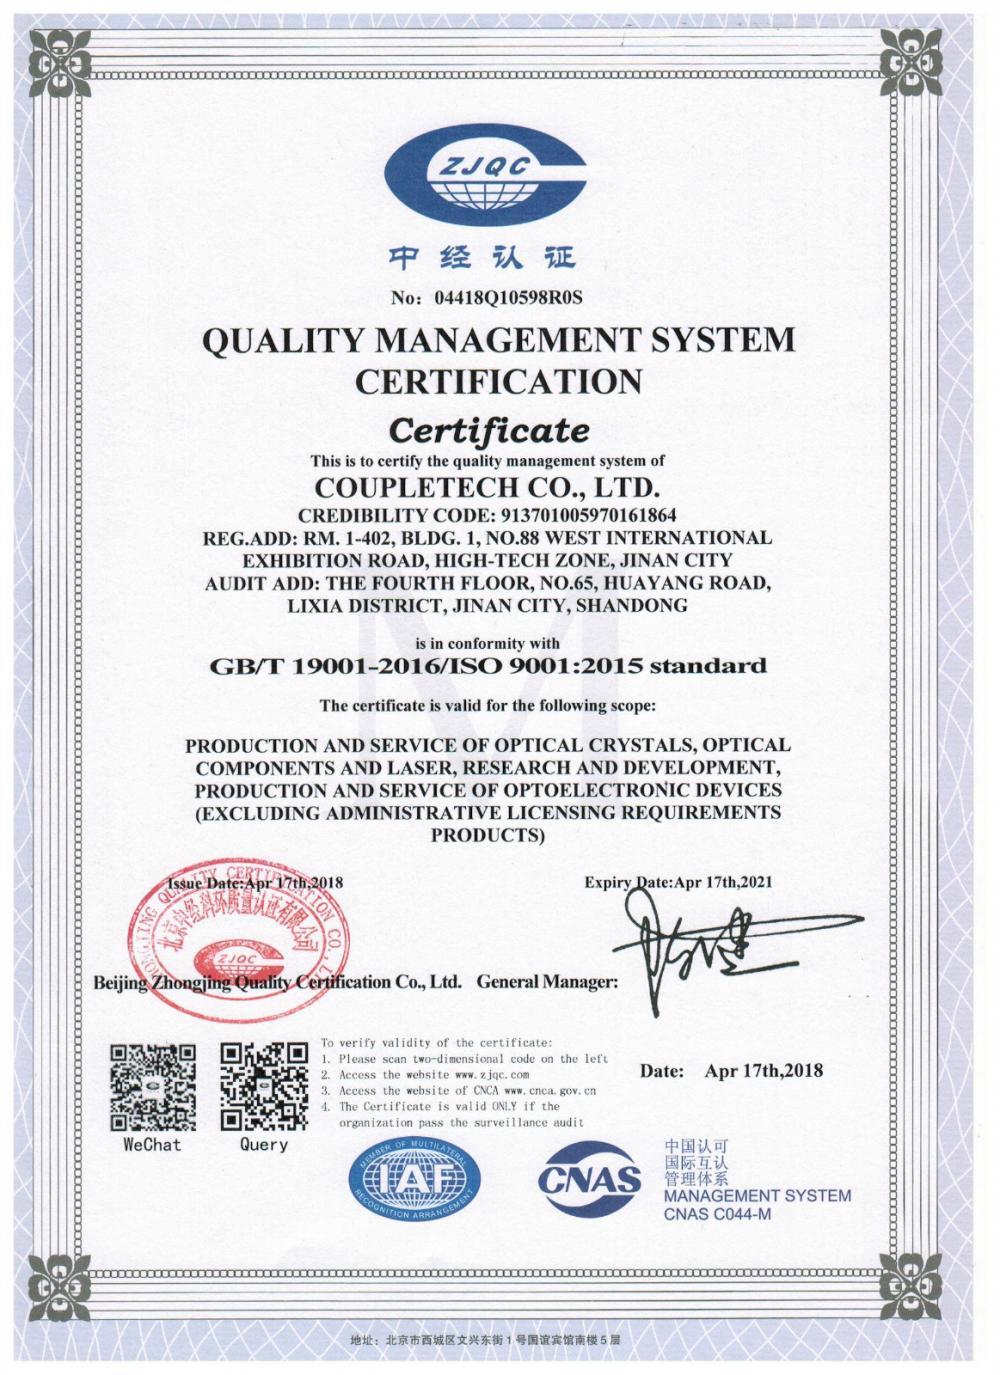 Coupletech Co., Ltd. przeszła certyfikację: modułowy uchwyt do aktywnych kryształów kontrolujących temperaturę.